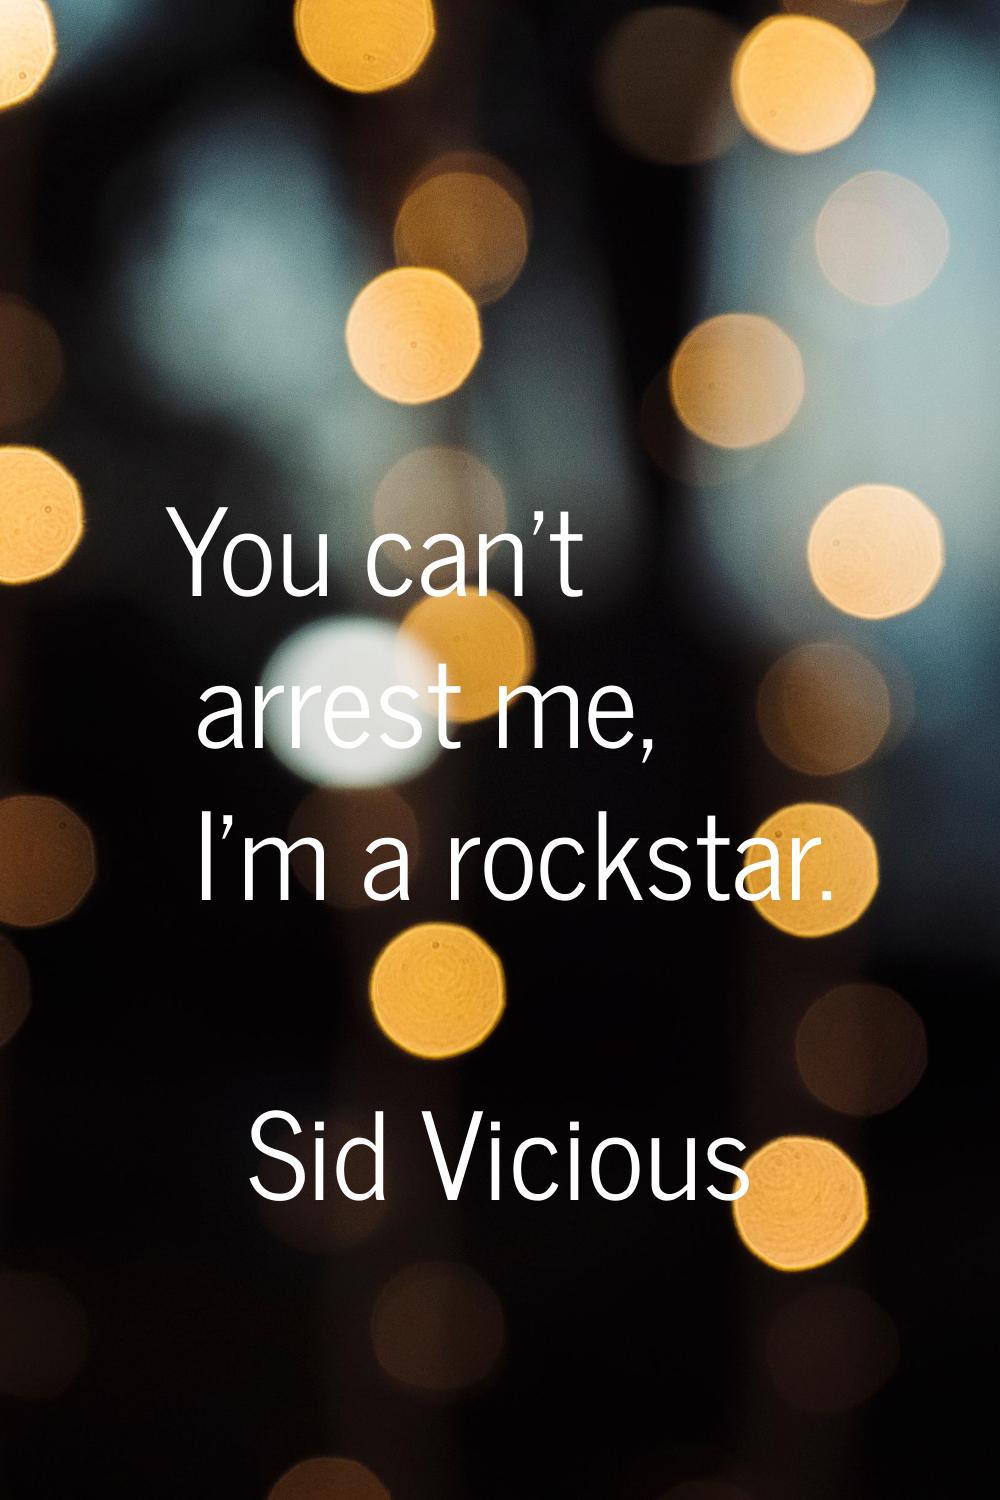 You can't arrest me, I'm a rockstar.